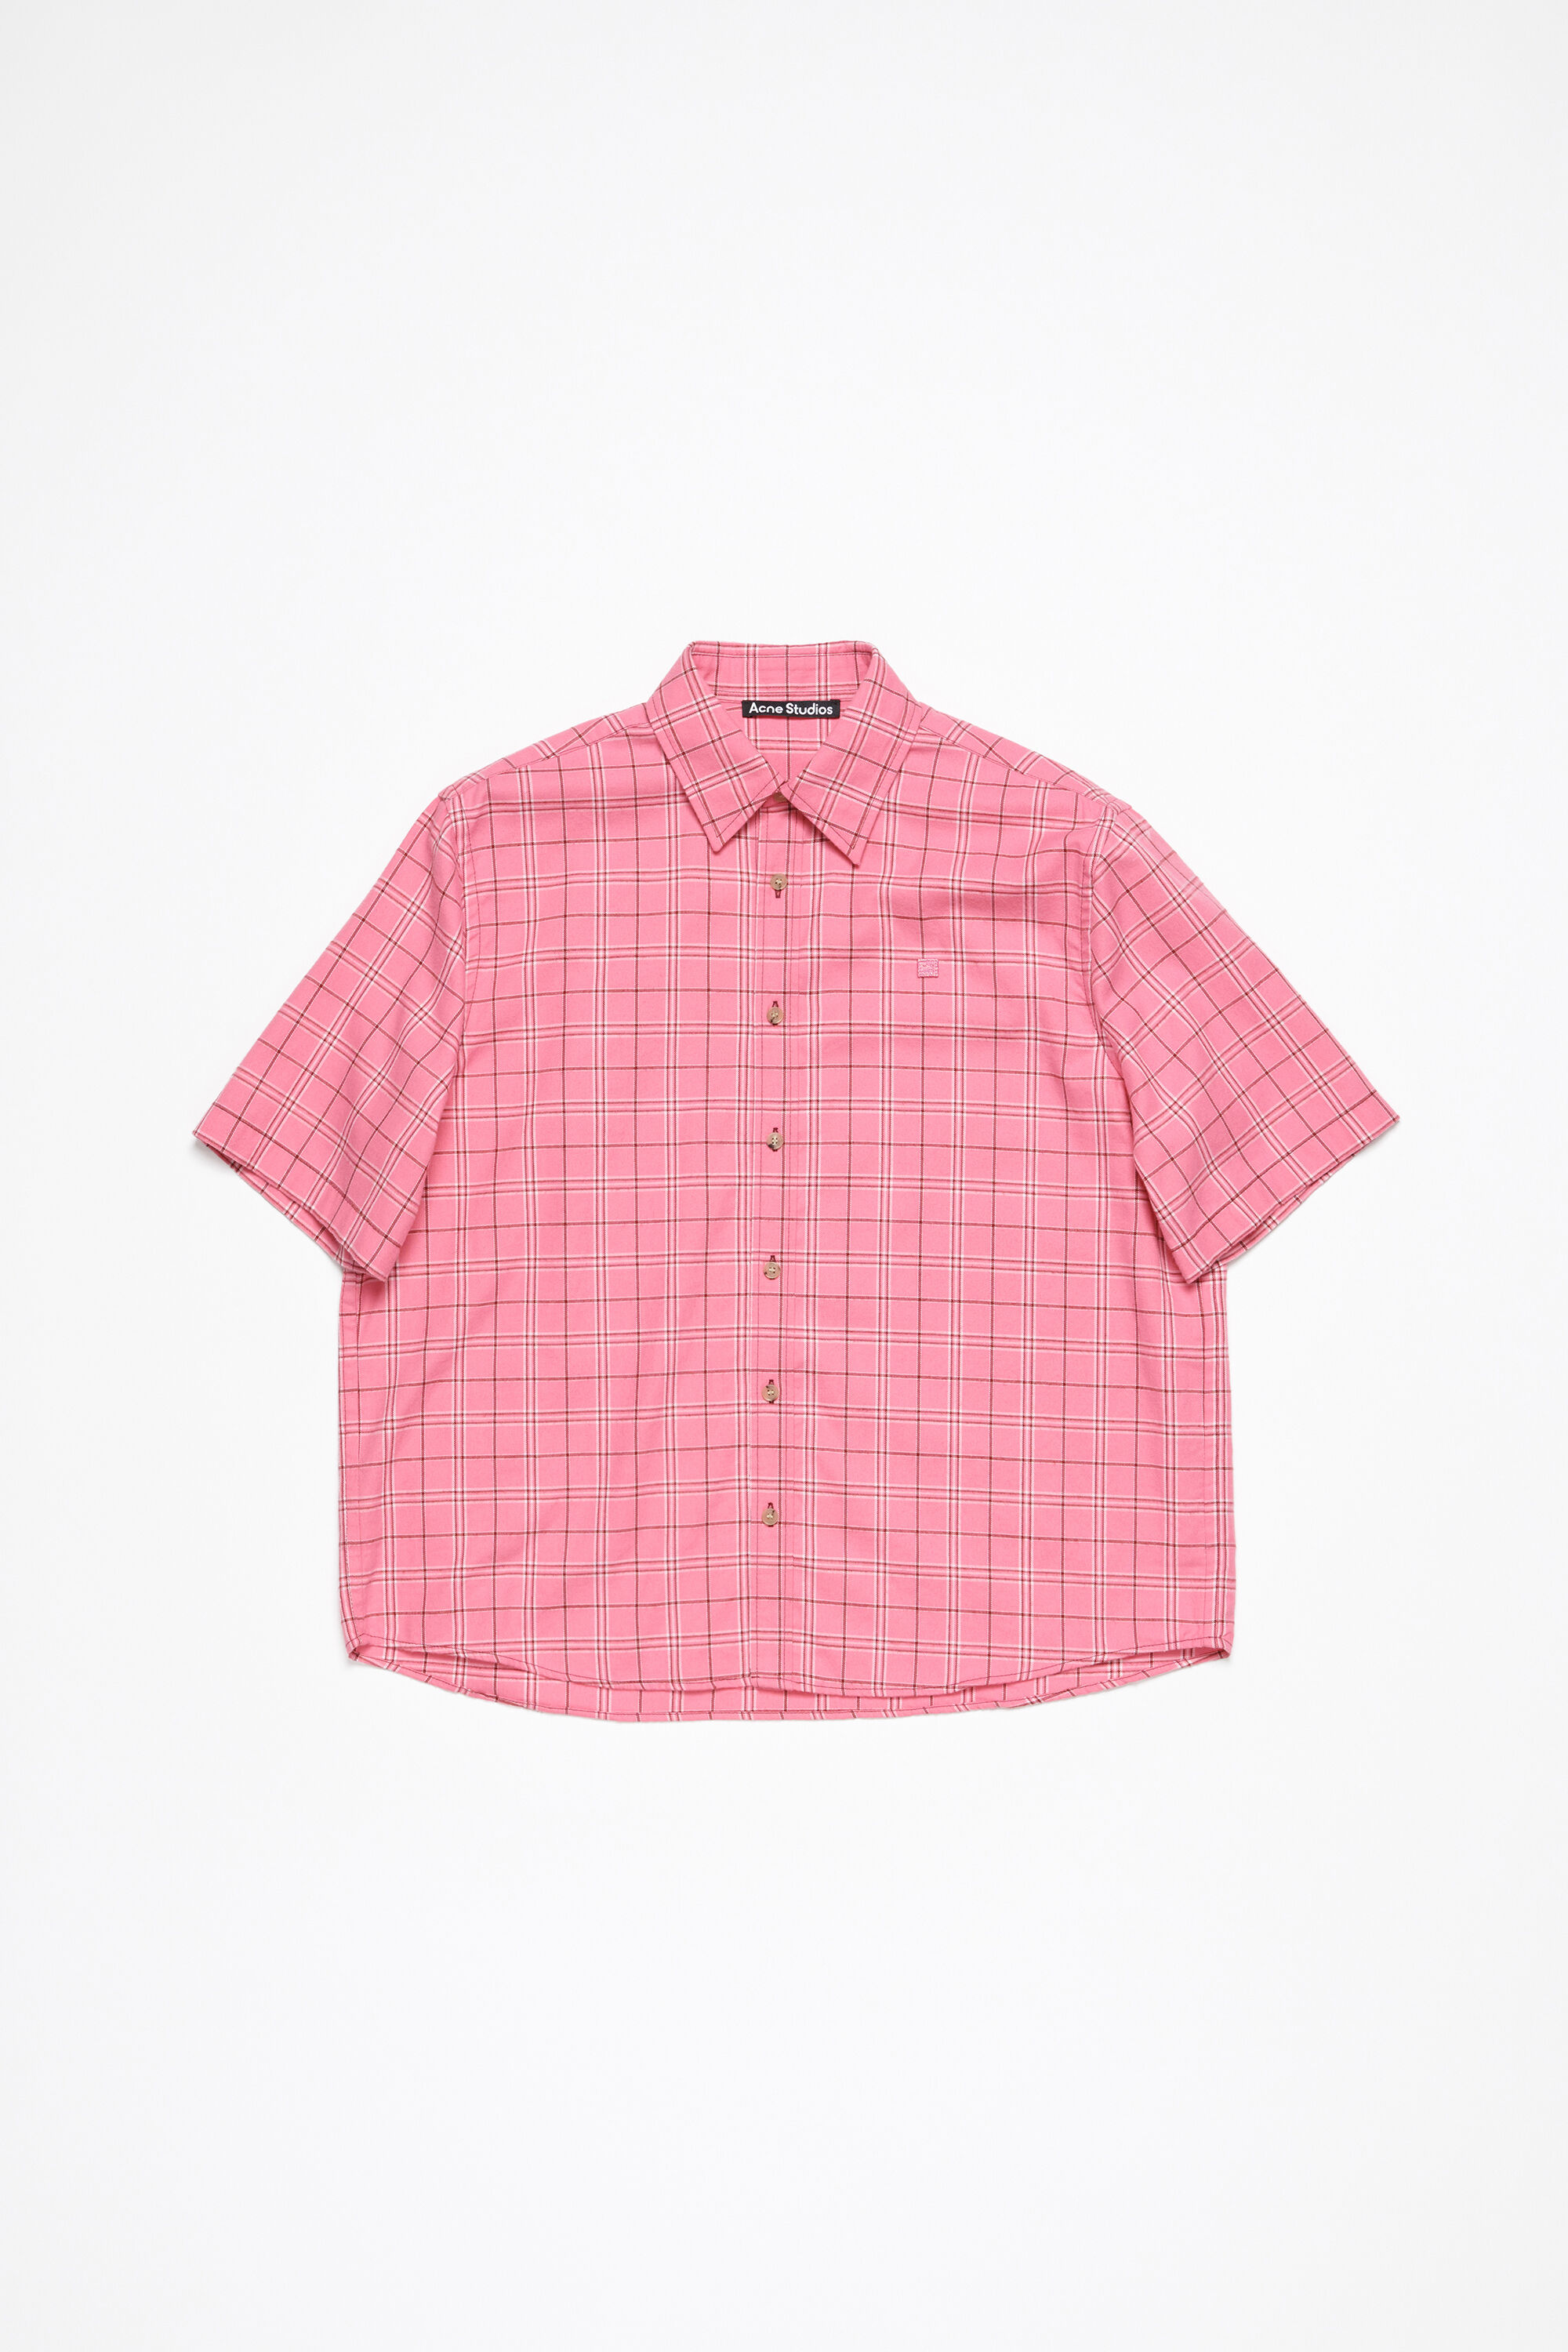 Acne Studios - Button-up shirt - Tango pink